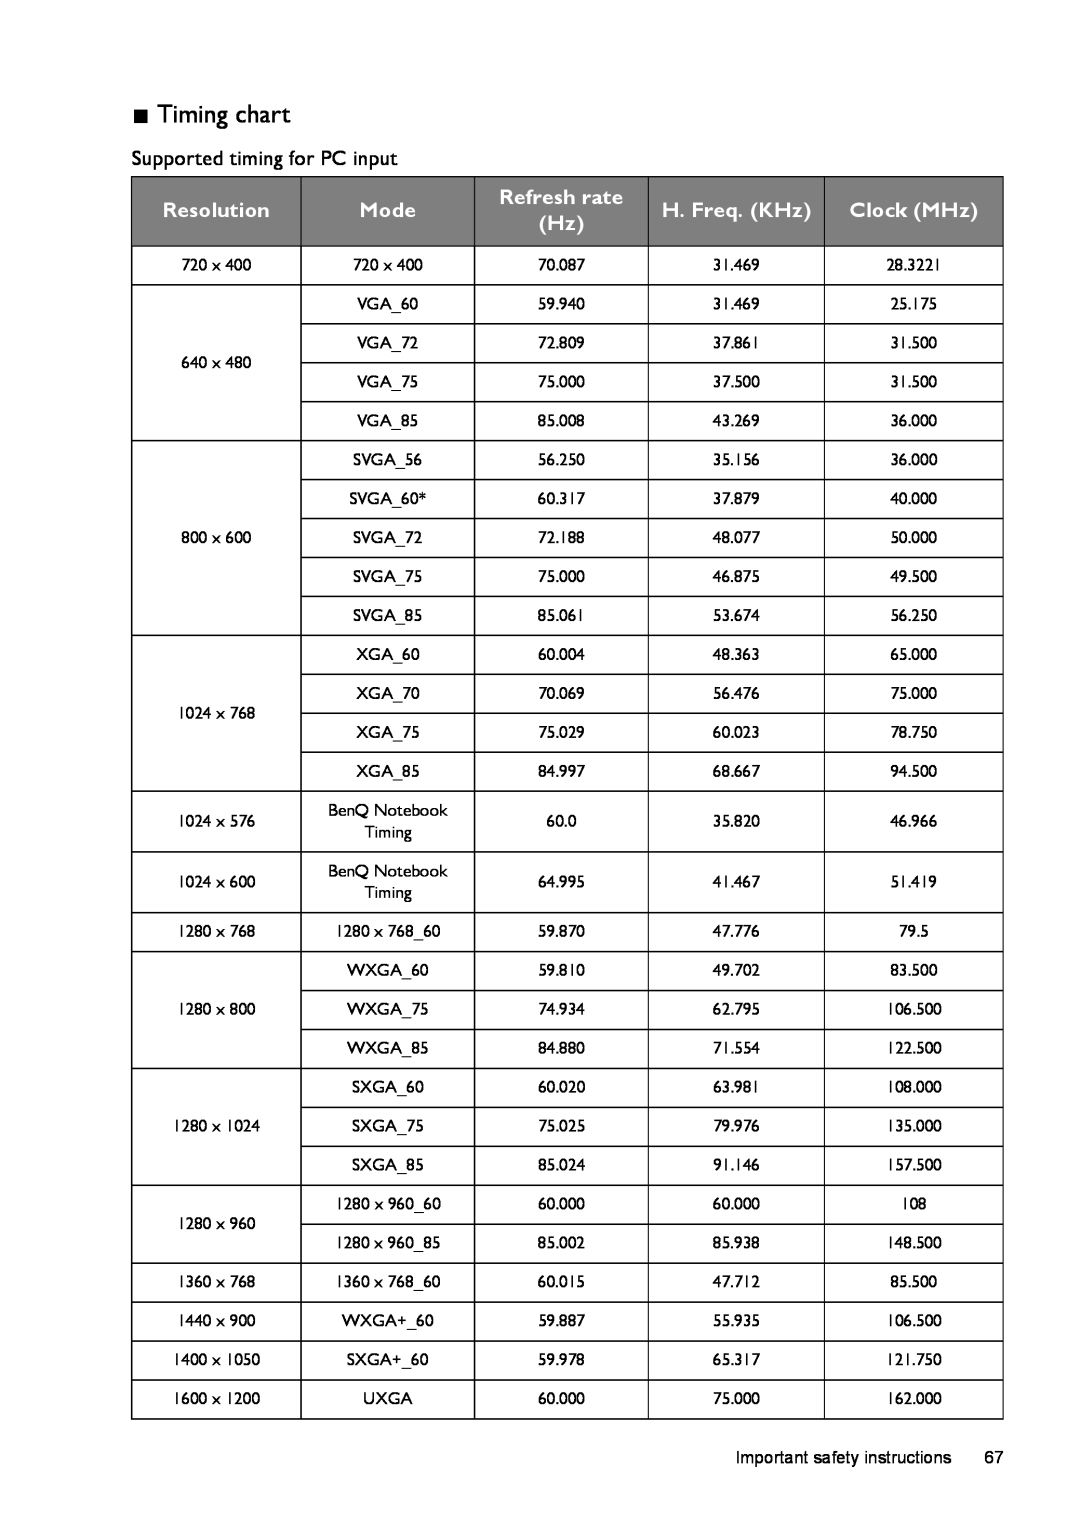 BenQ W1500 user manual Timing chart, BenQ Notebook, WXGA60, WXGA75, WXGA85, WXGA+60 